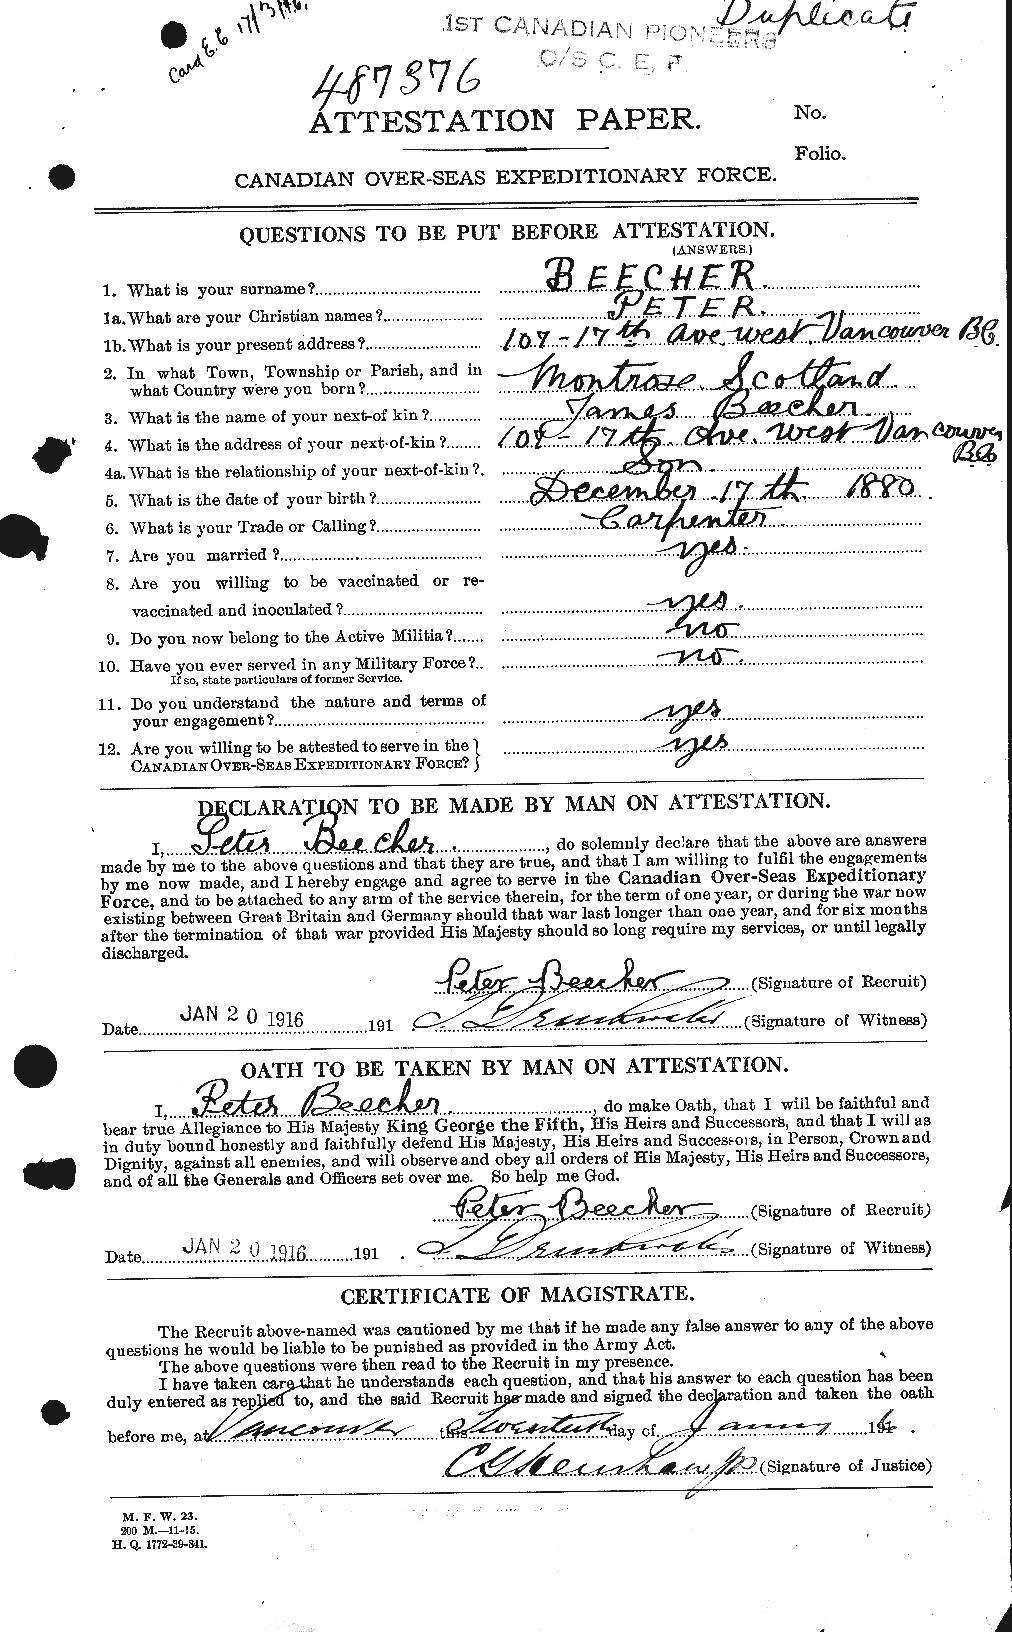 Dossiers du Personnel de la Première Guerre mondiale - CEC 239690a